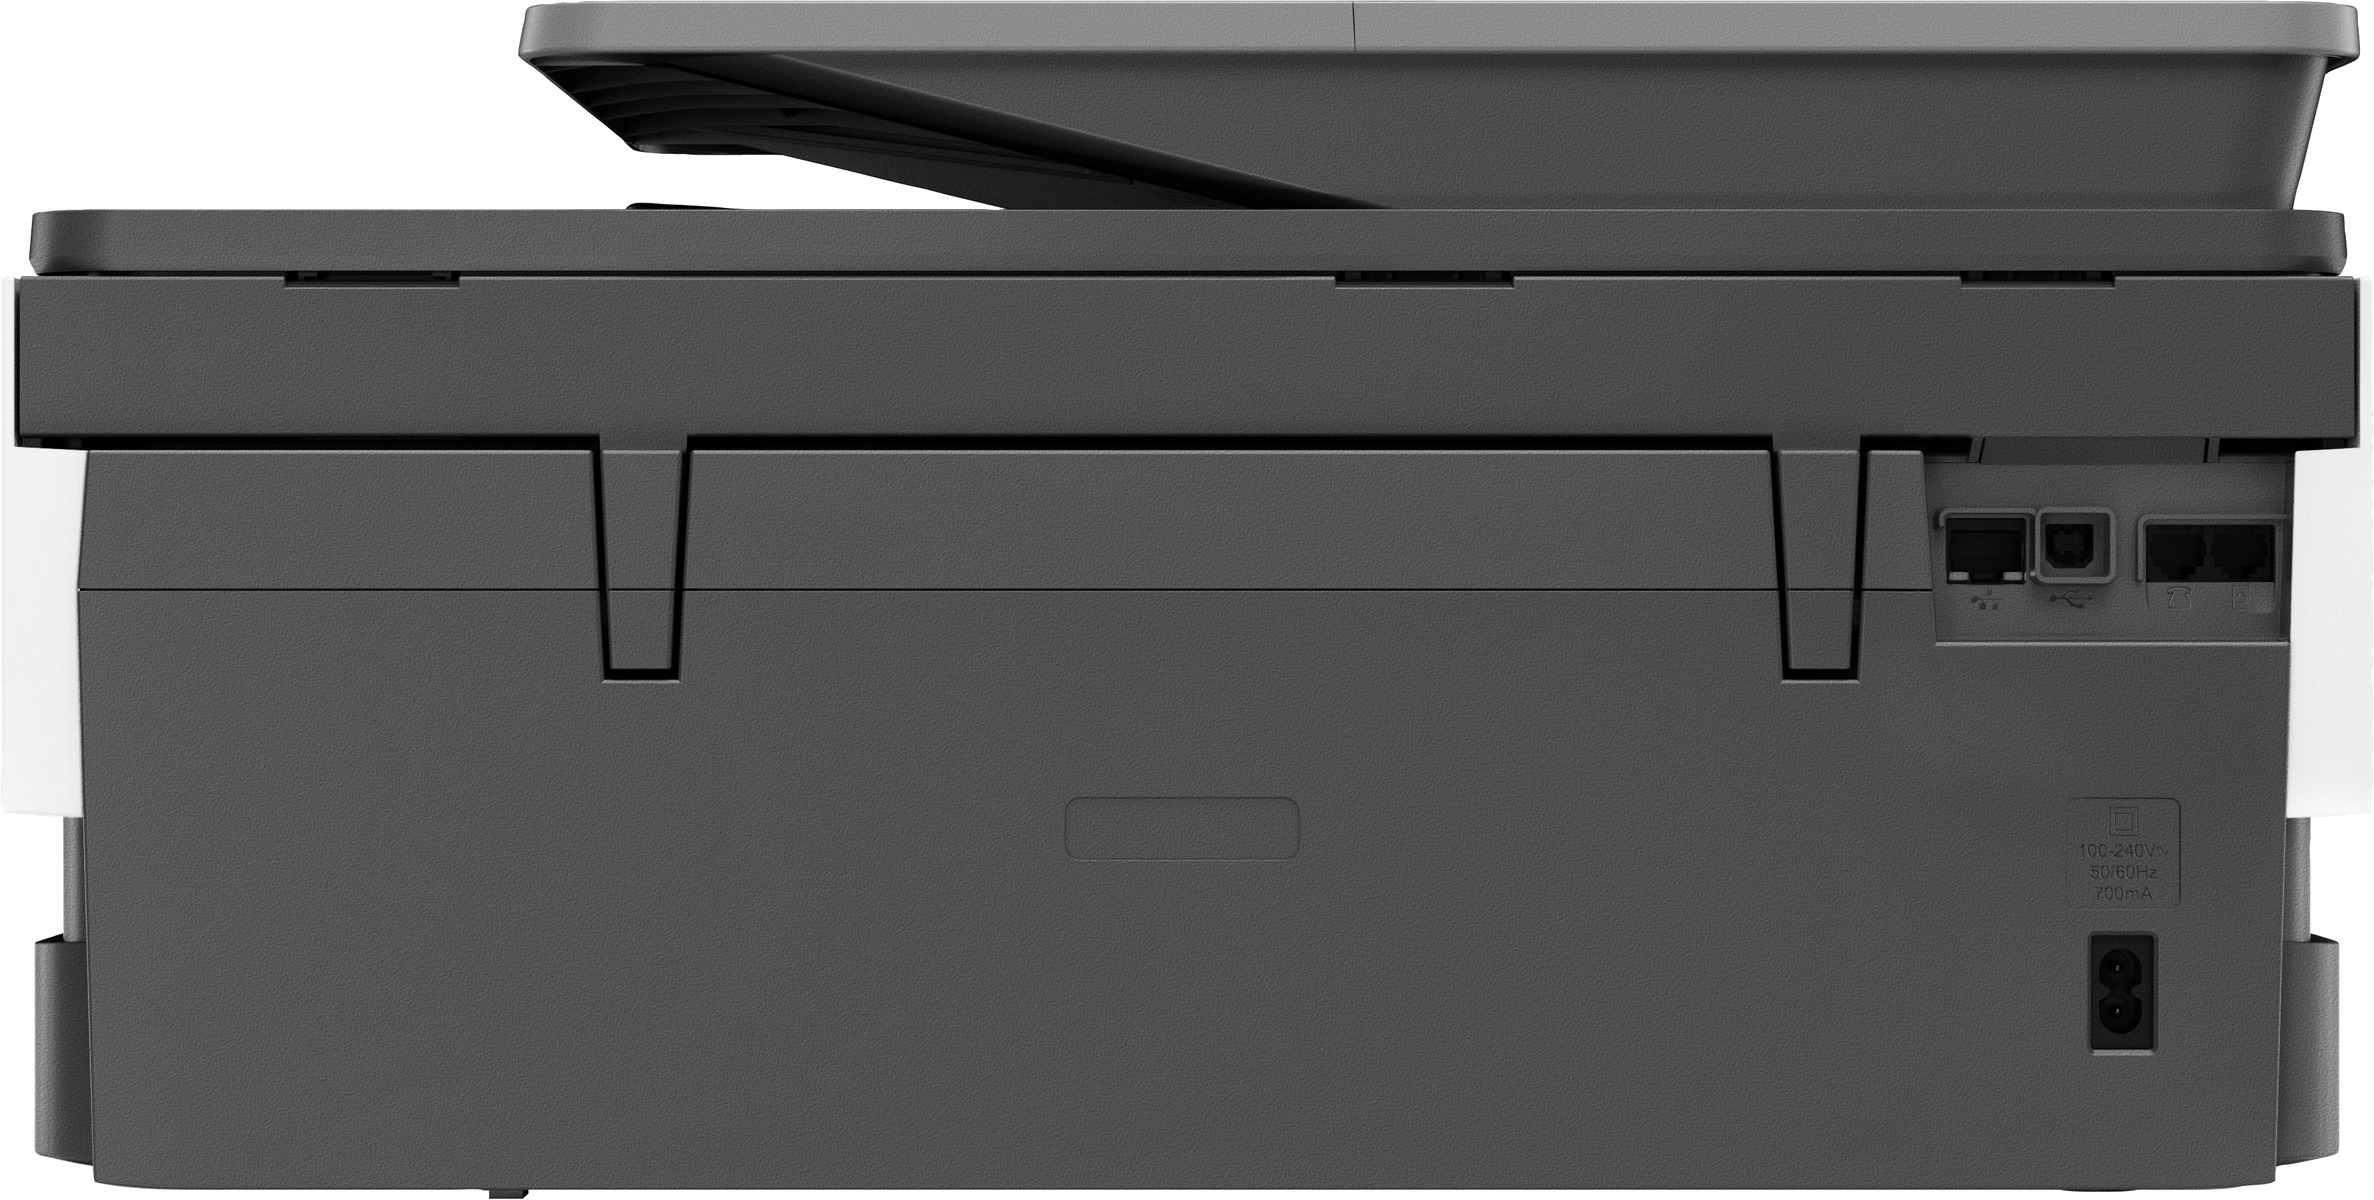 ALL-IN-ONE Multifunktionsdrucker OFFICEJET WLAN Inkjet Thermal HP 8014